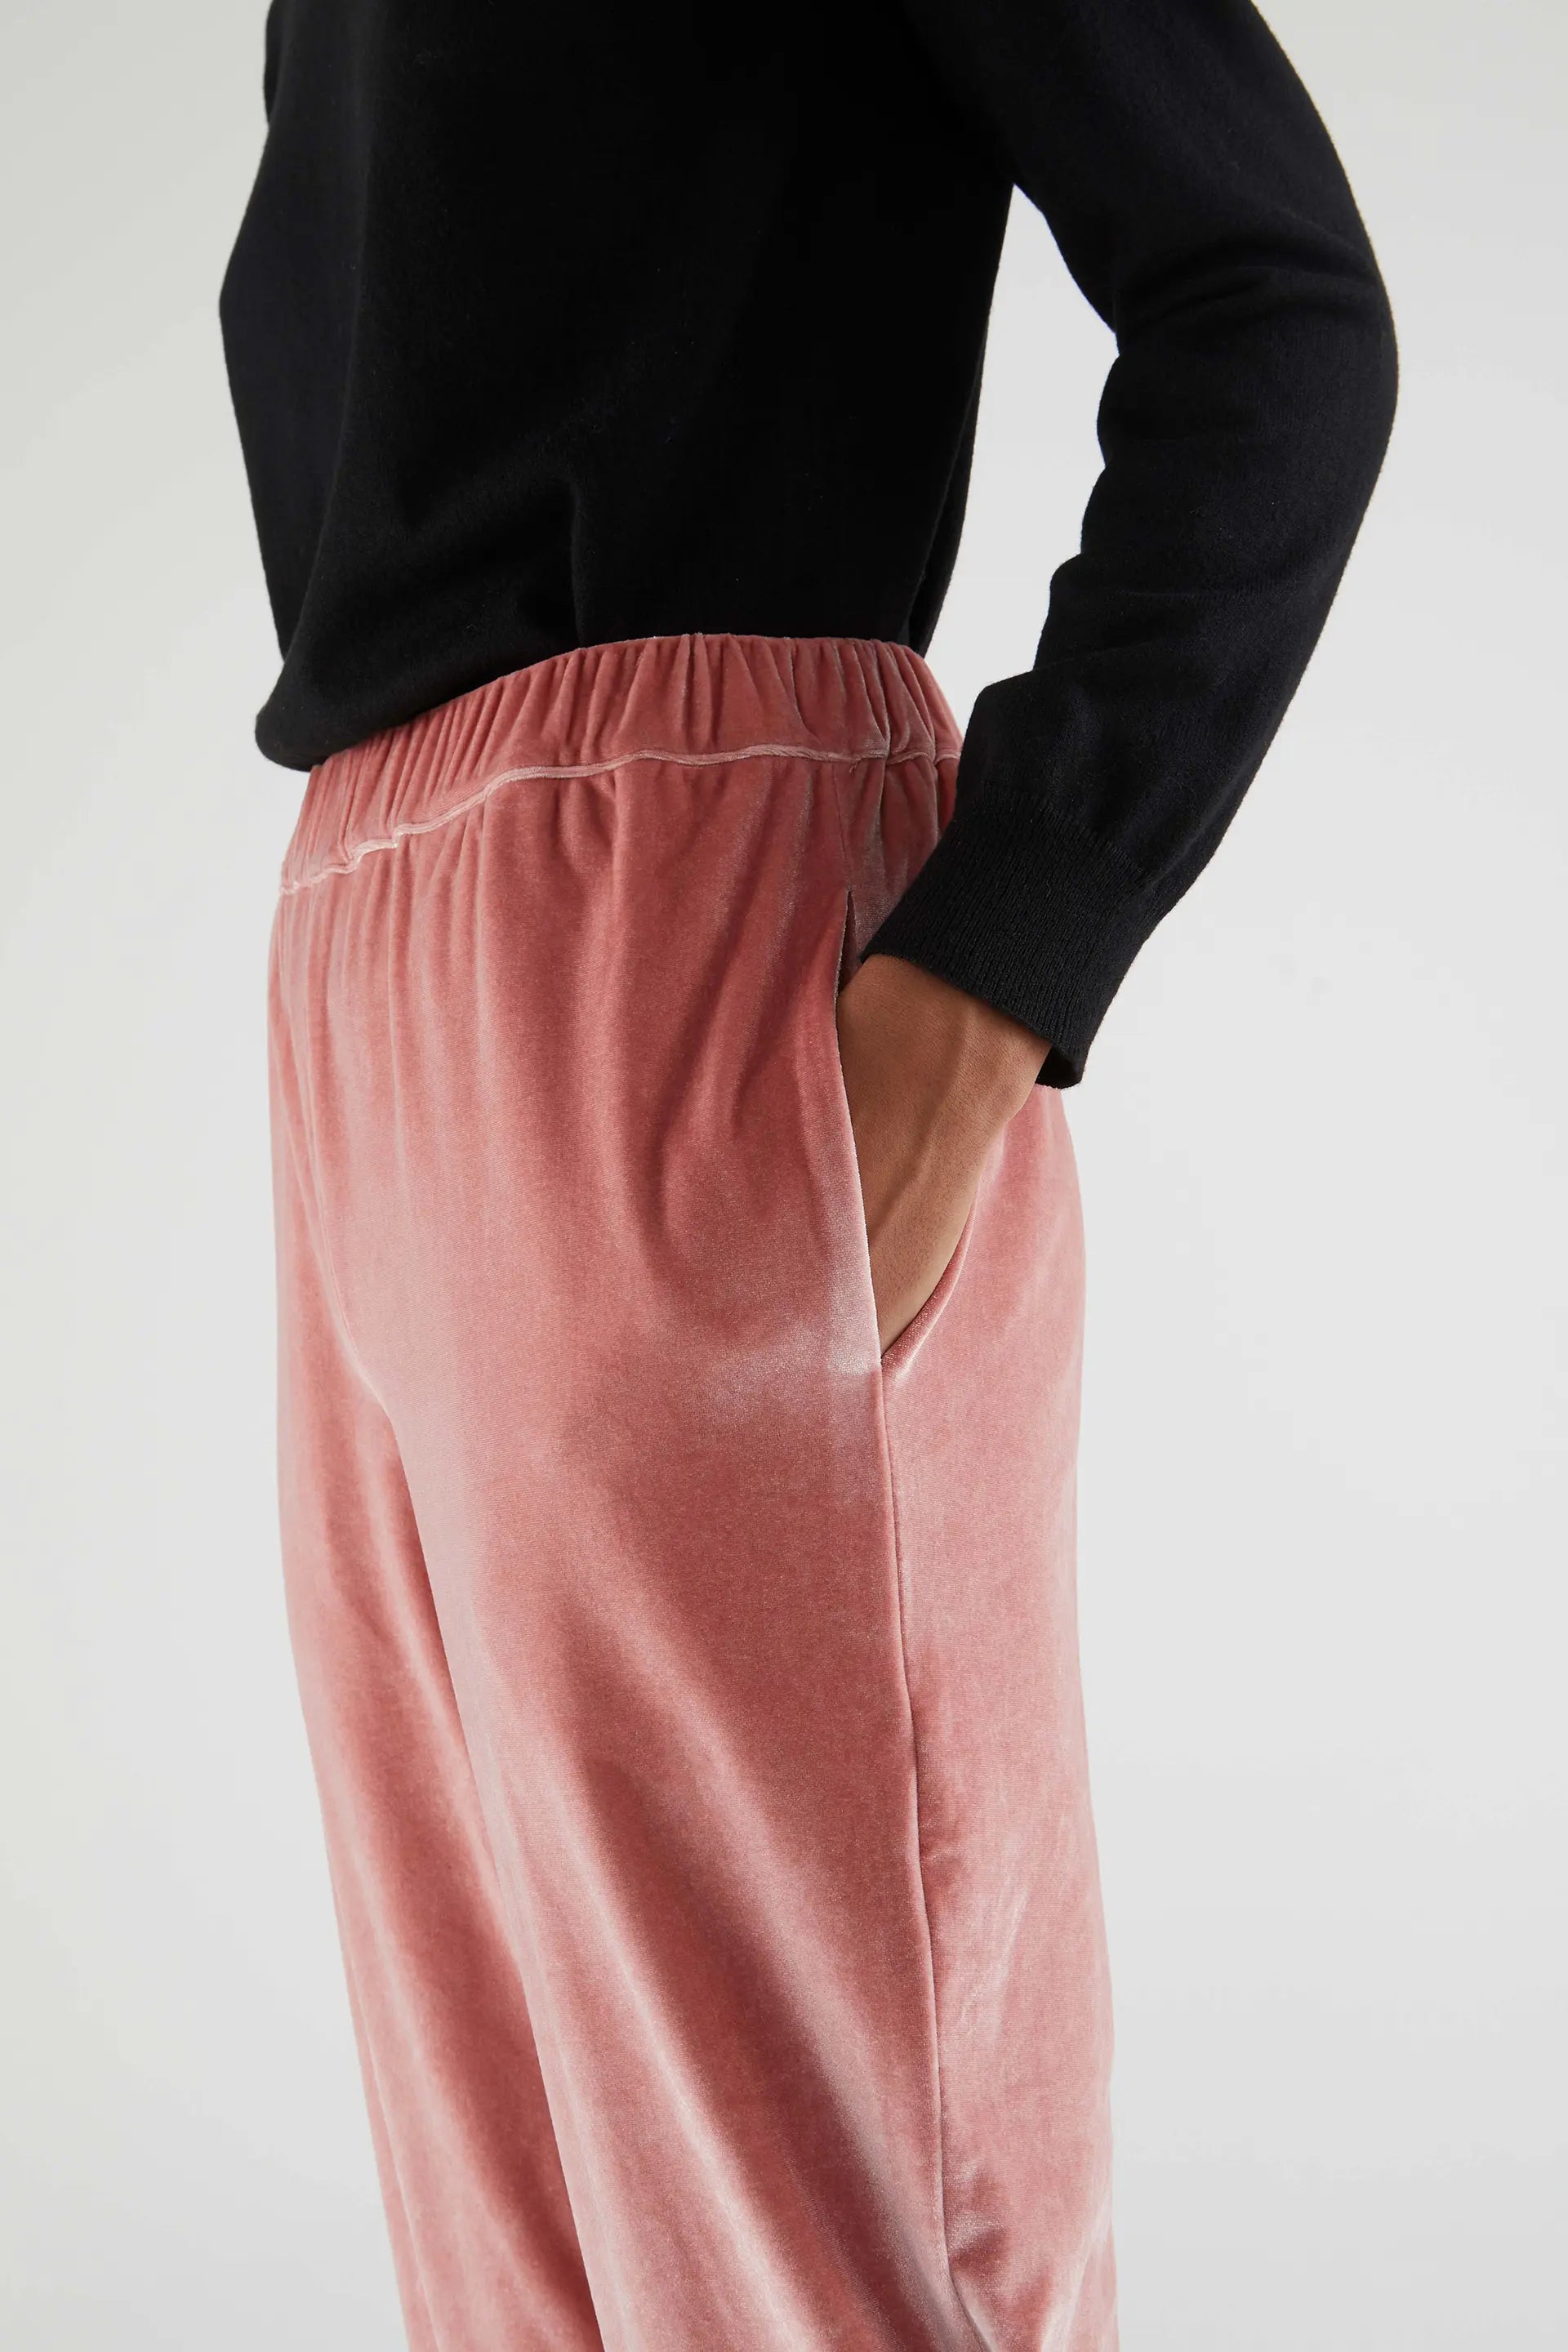 10 pantalones elásticos de Zara que reducen cintura y son